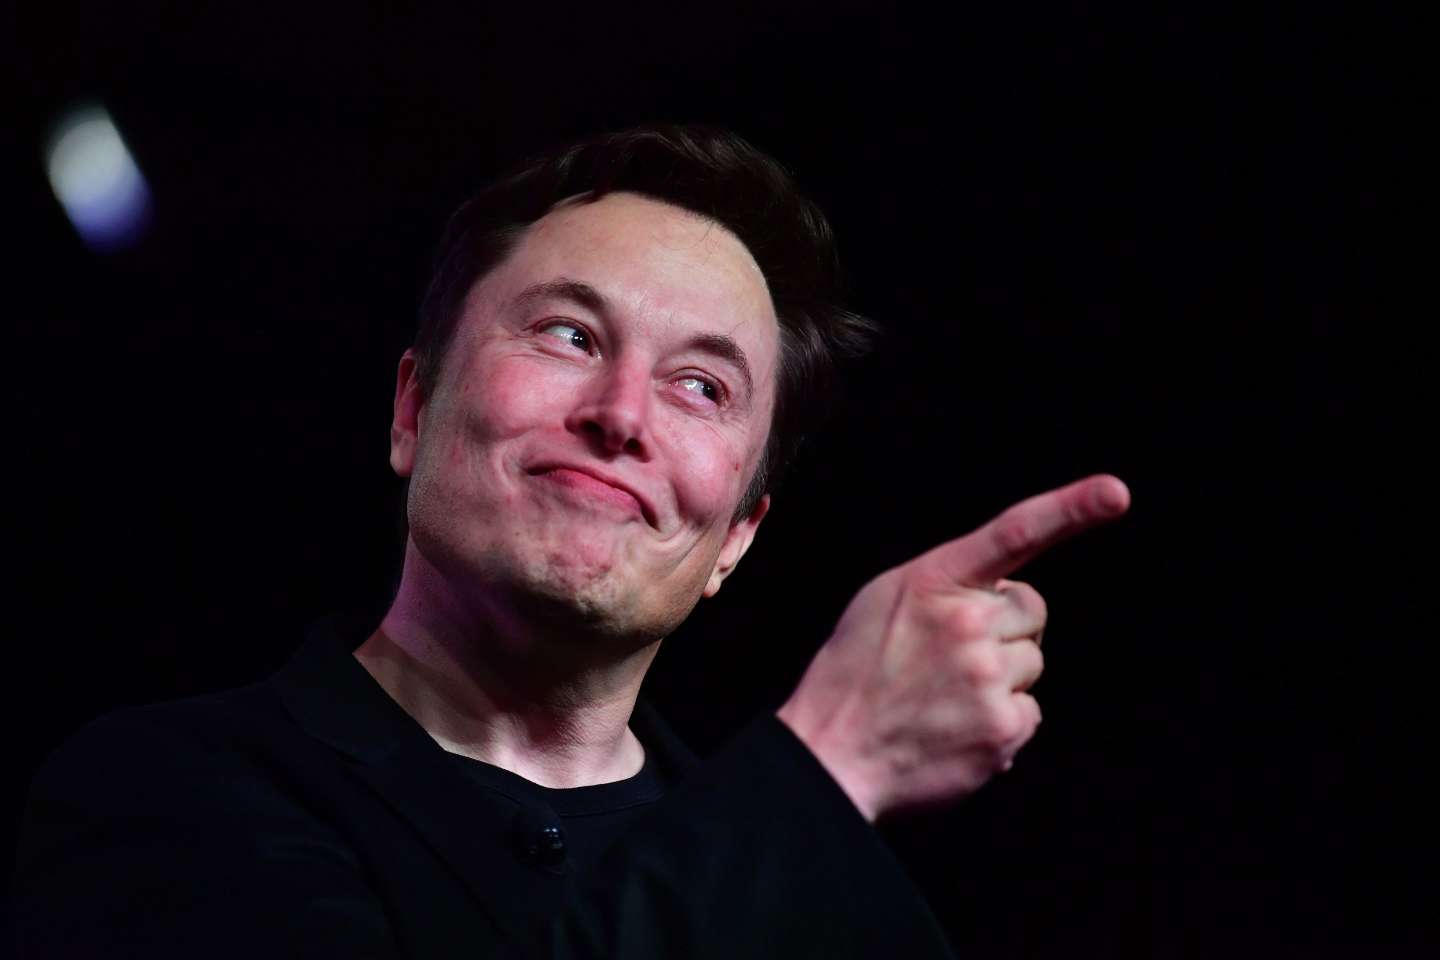 « Monsieur Elon Musk, si vous voulez vraiment mettre Twitter au service de l’humanité, ouvrez-le ! »